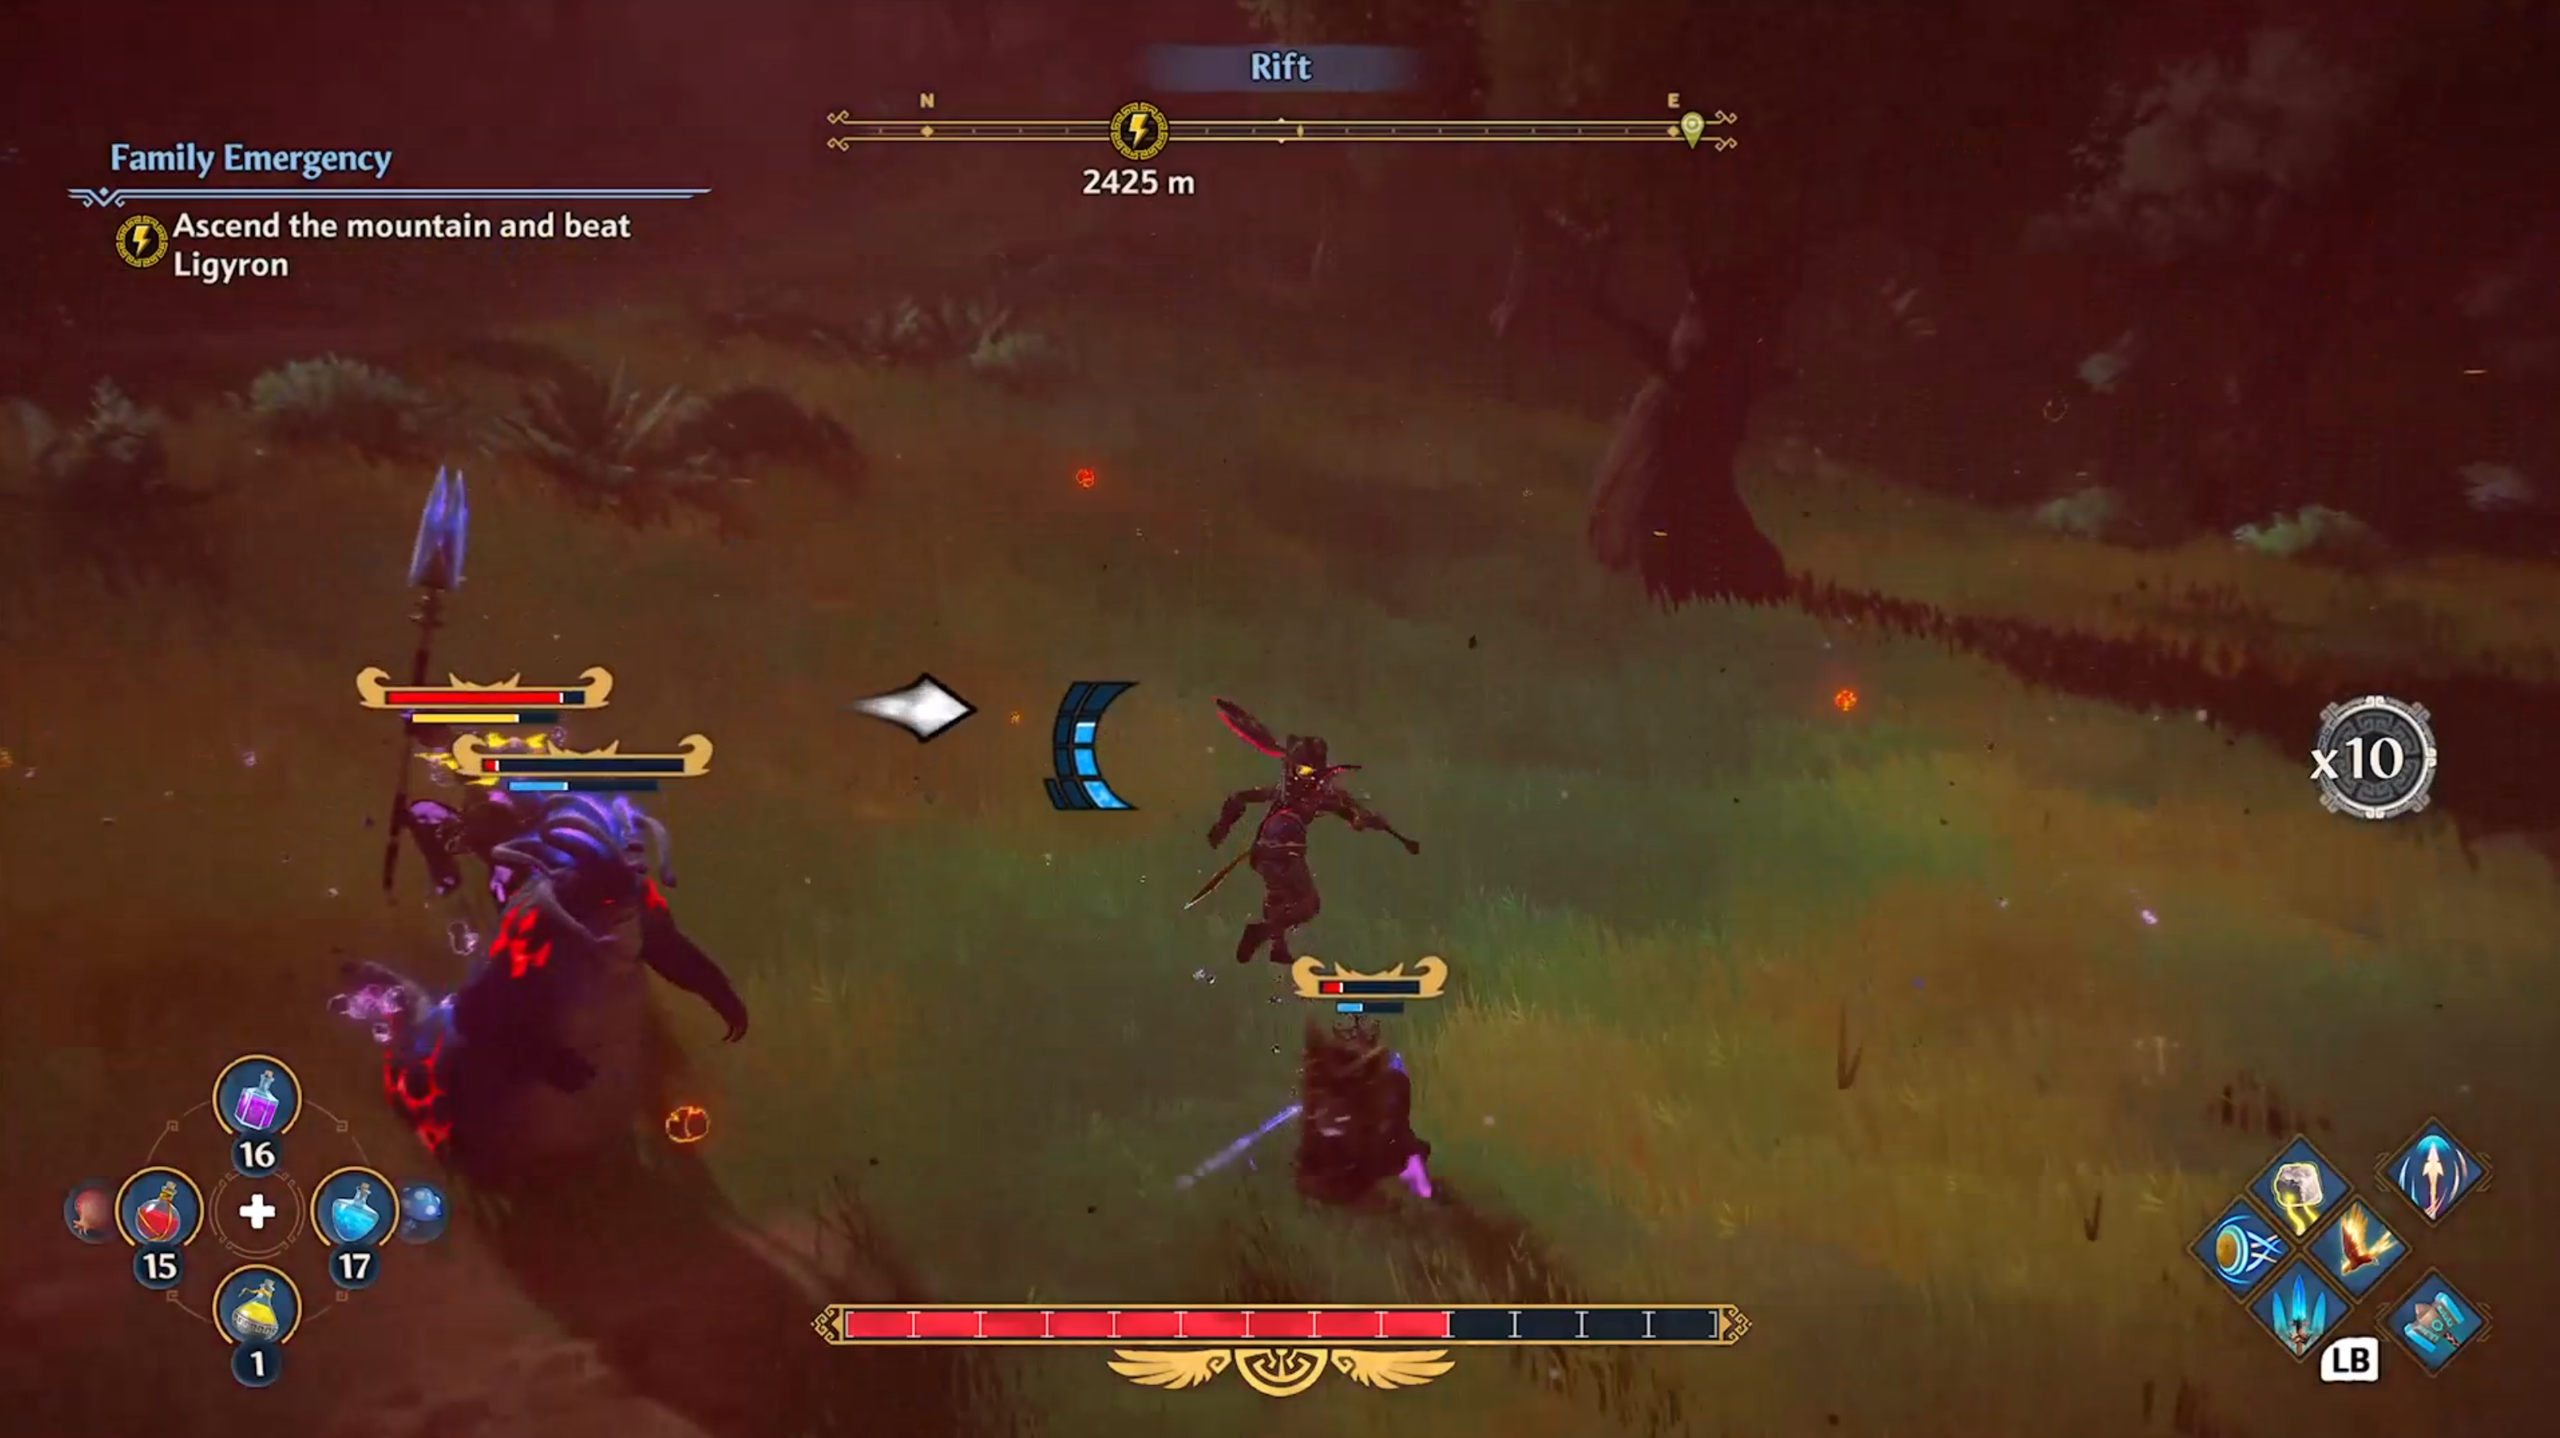 攻撃の準備をしている敵に向かってプレイアブル キャラクターから左に向いている、黒い輪郭の白い矢印を示す、Immortals Fenyx Rising のスクリーンショット。